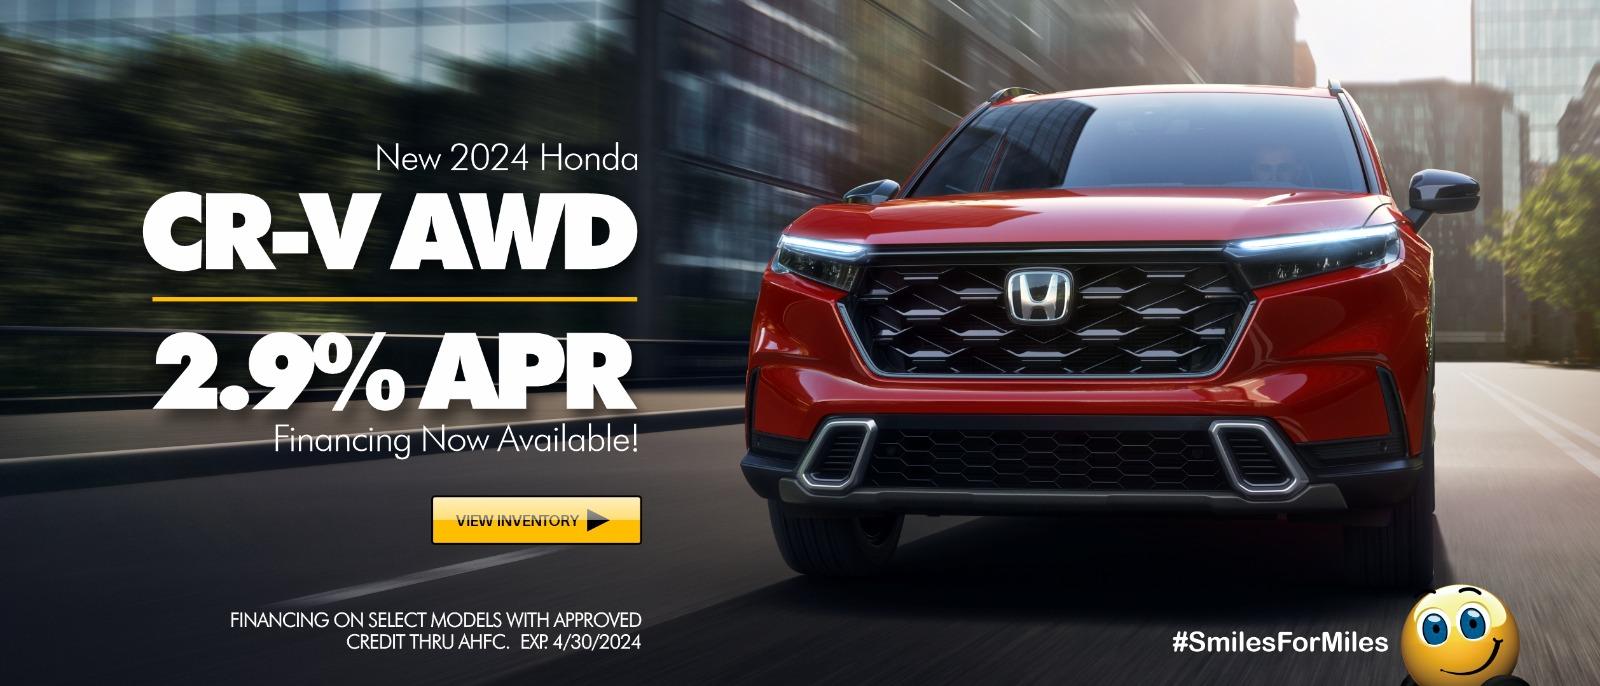 2024 Honda CRV - 2.9% APR Now available